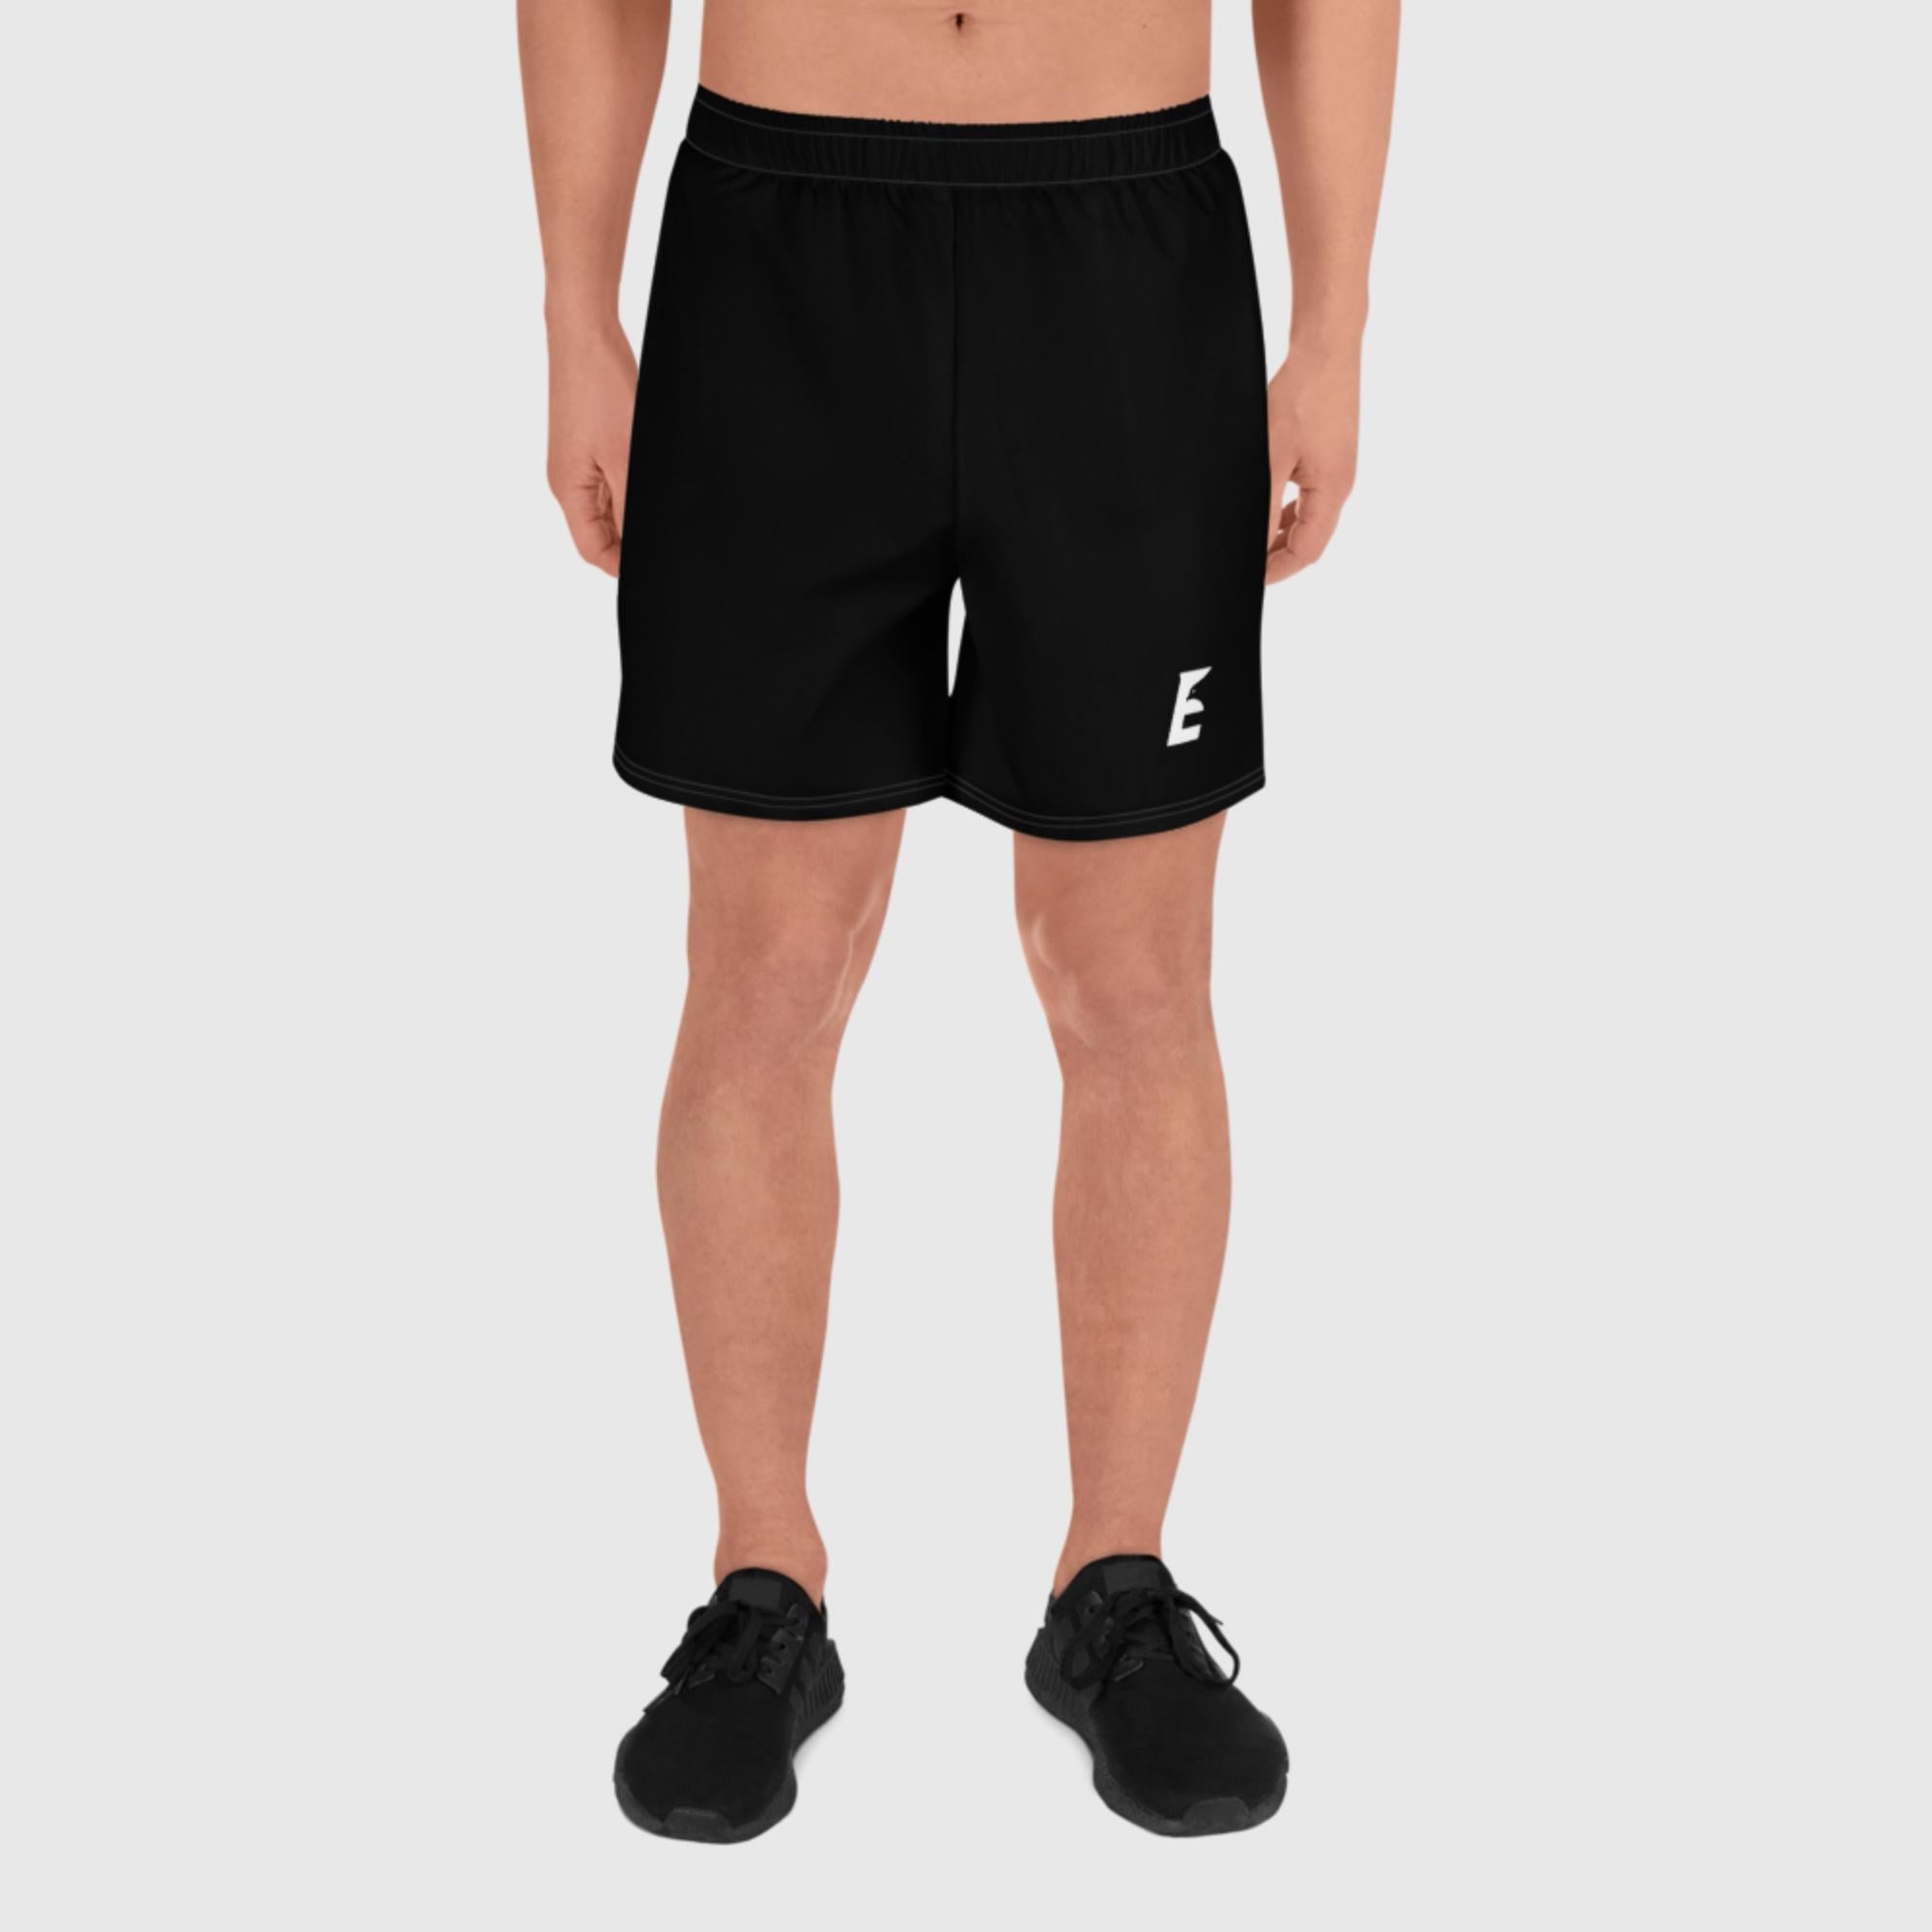 Athletic Shorts 2XS - Eagle